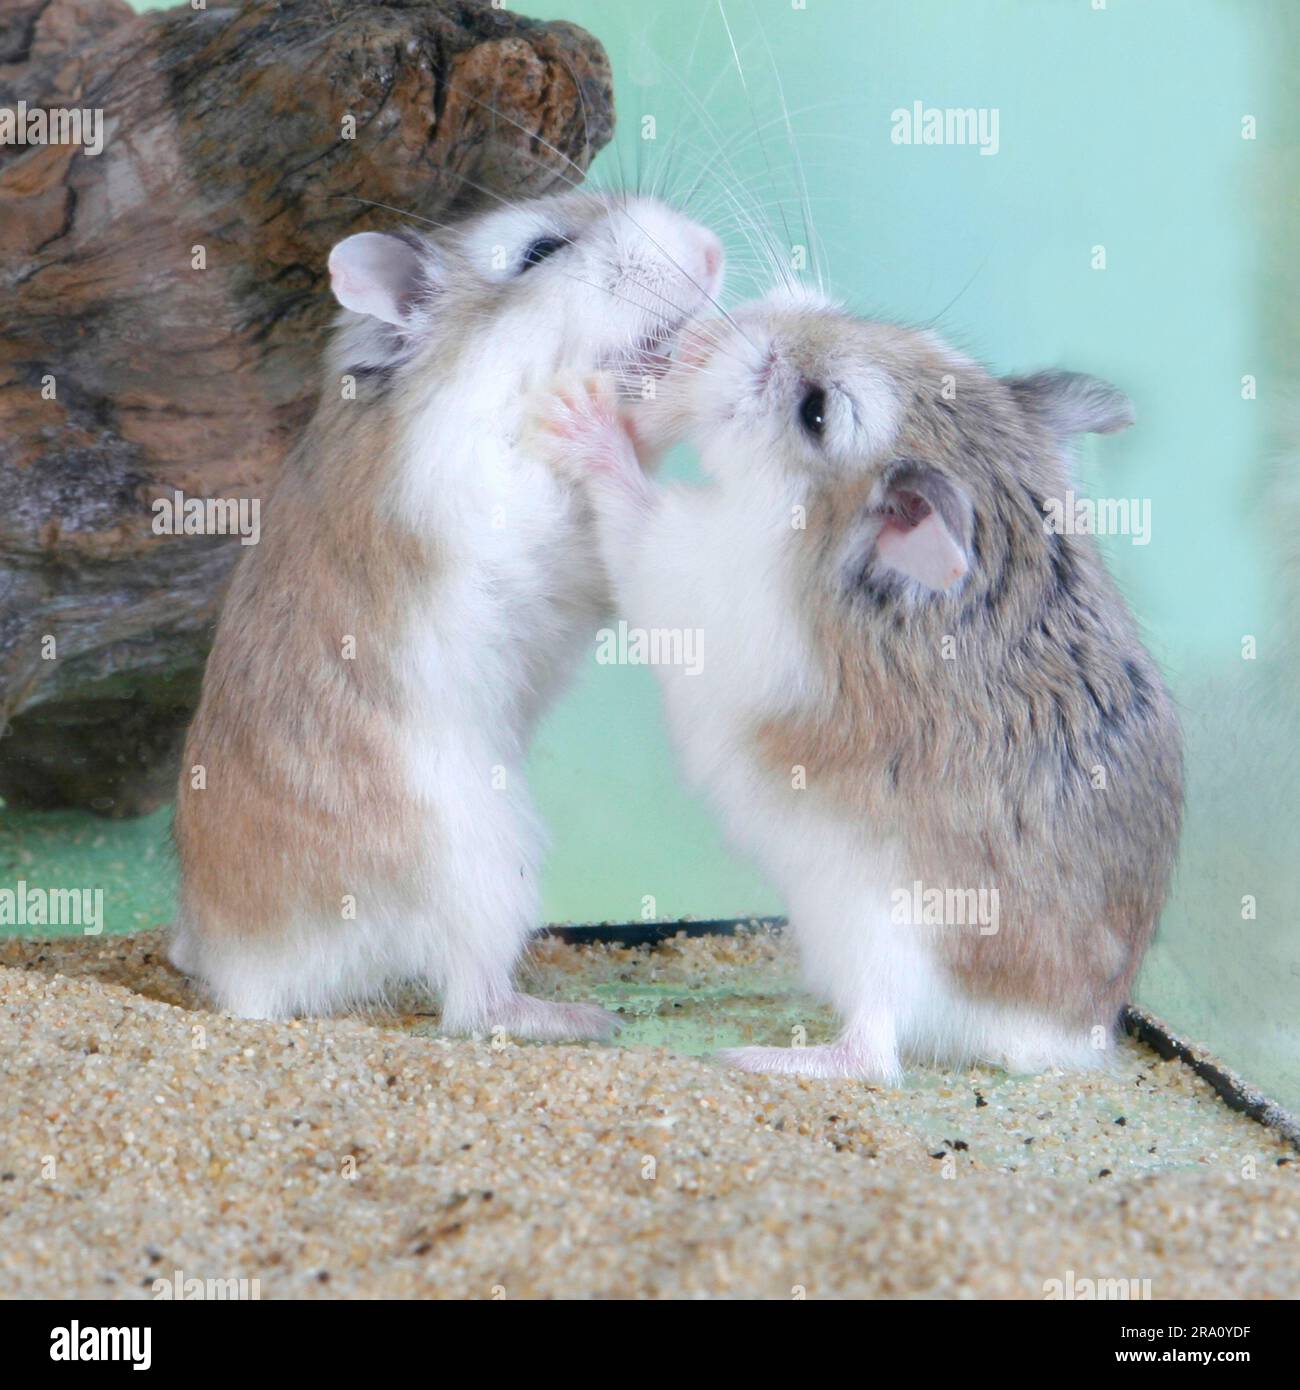 Roborovski (Phodopus roborovskii) Hamsters, pair Stock Photo